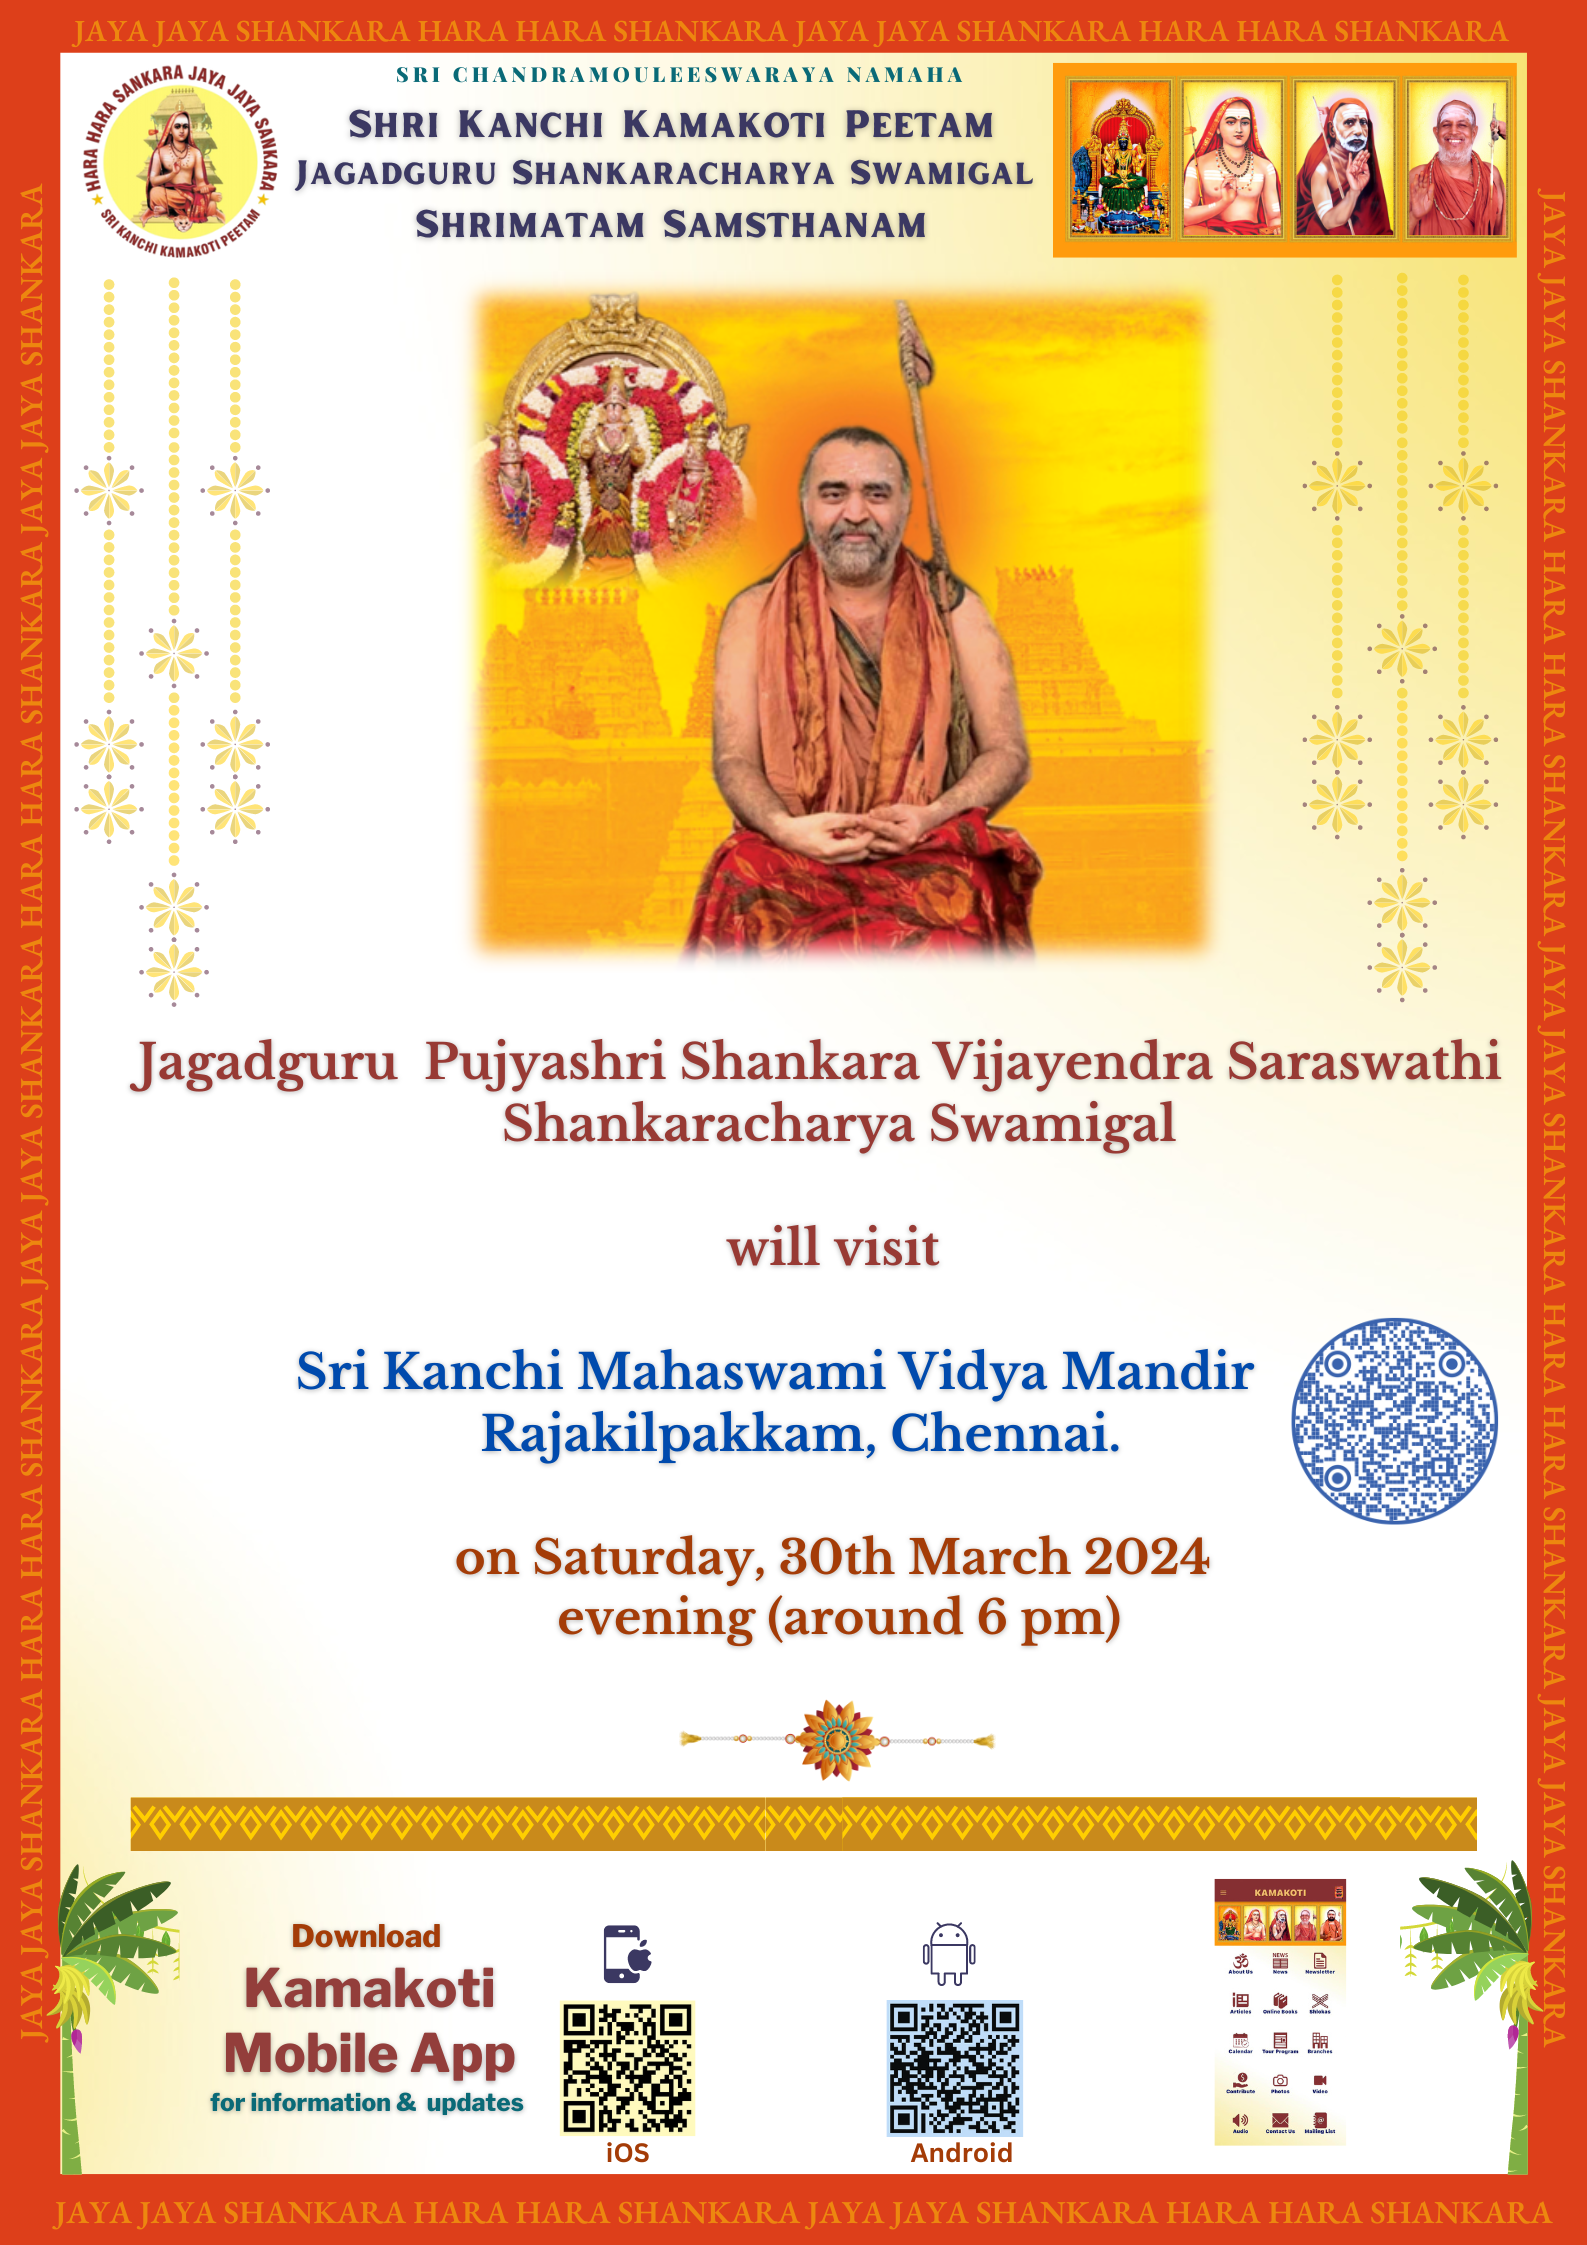 Pujya Shankaracharya Swamigal to visit Sri Kanchi Mahaswami Vidyamandir, Chennai